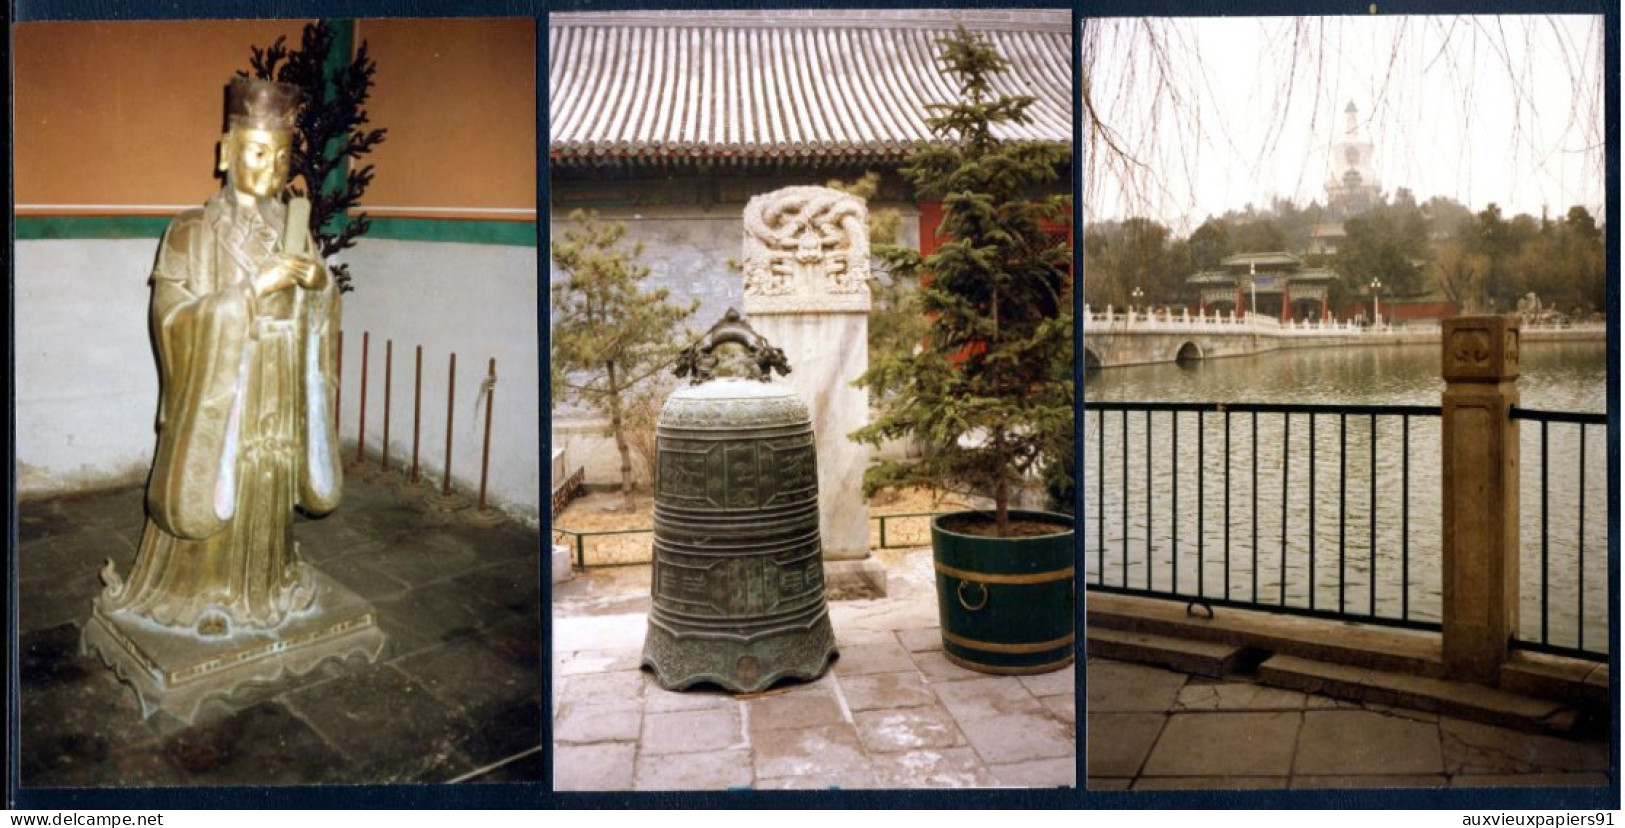 CHINE - PEKIN - 143 photos de mars 1987 - Monuments - coutumes - Exceptionnel (voir descriptif) - Année du LIEVRE